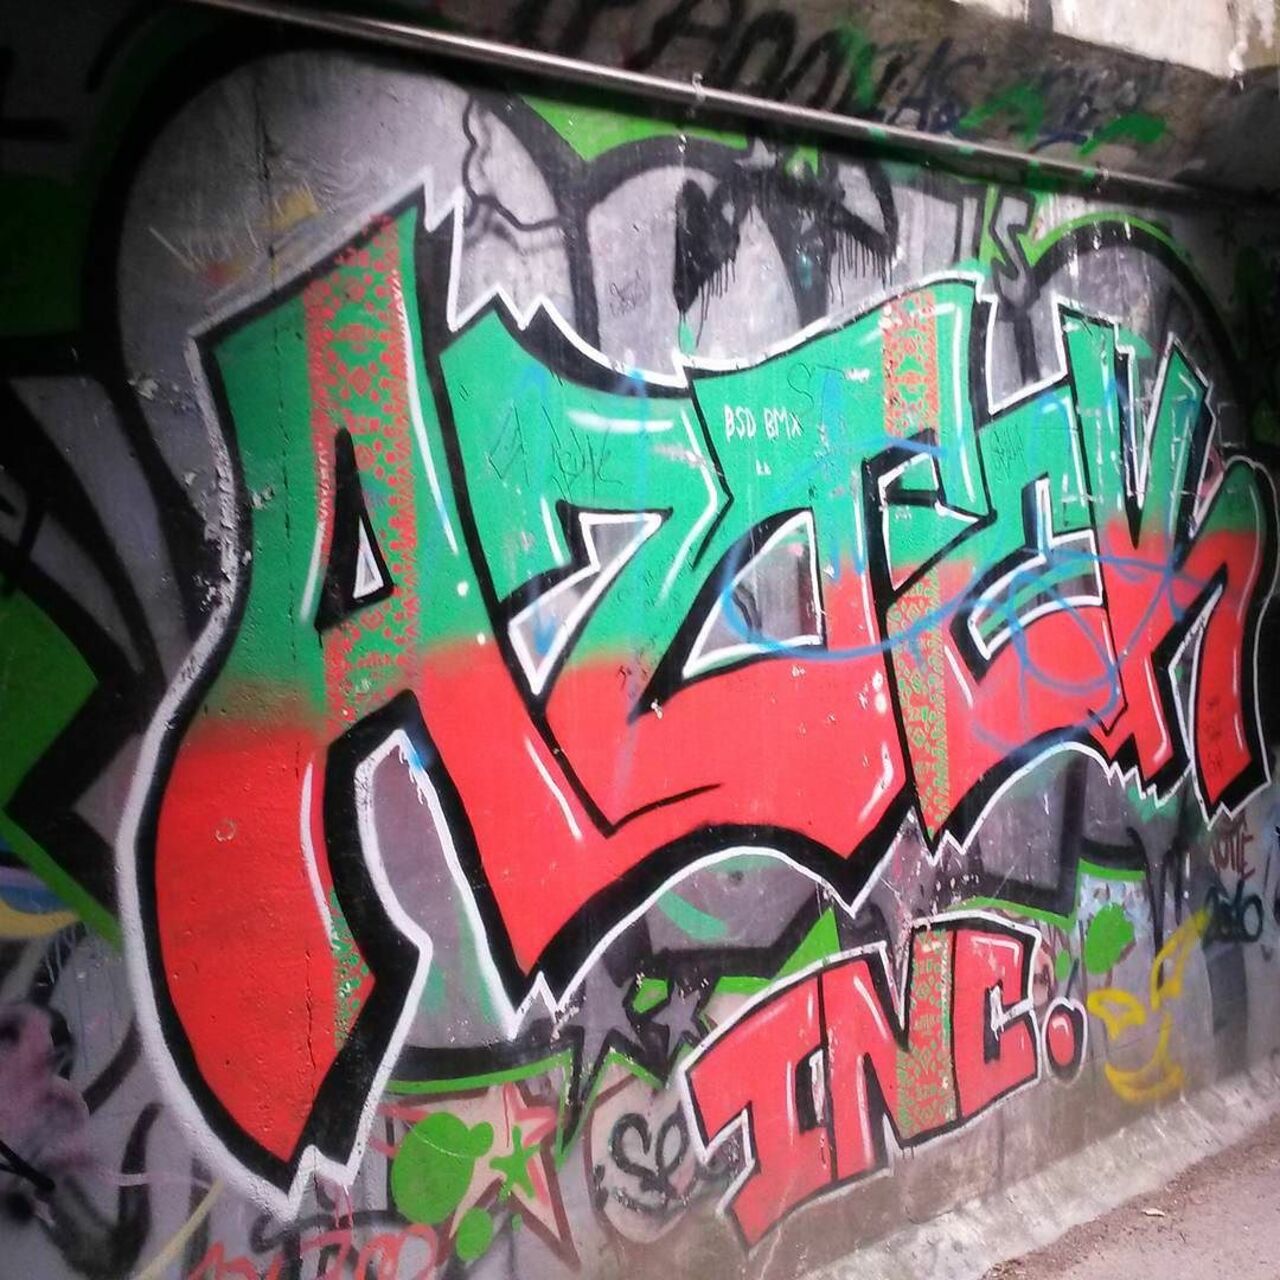 #Paris #graffiti photo by @le_cyclopede http://ift.tt/1M60nh7 #StreetArt https://t.co/0zVRM7OSAX